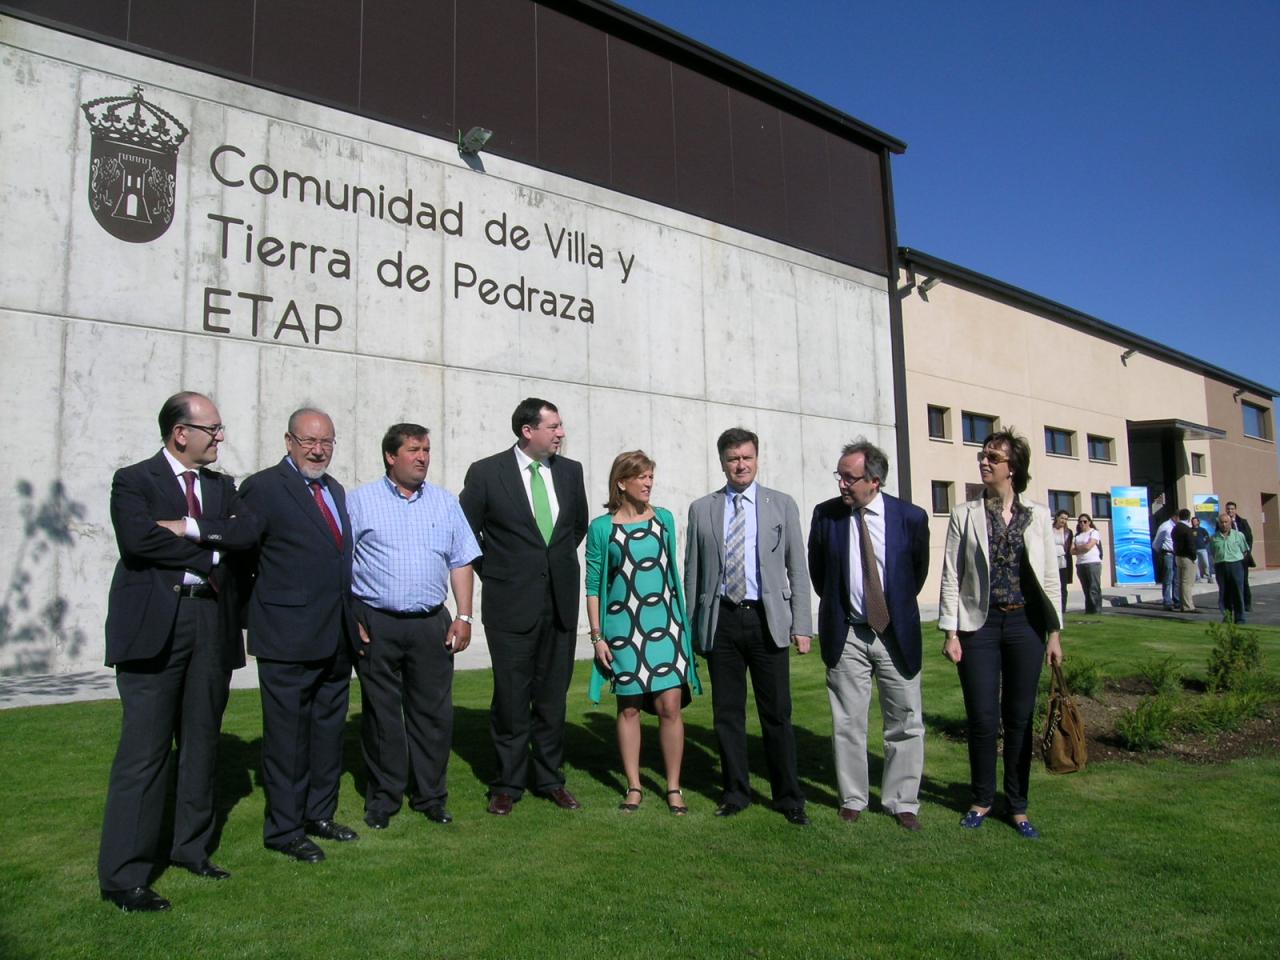 La nueva infraestructura hidráulica de la Comunidad Villa y Tierra de Pedraza (Segovia) asegura el abastecimiento a sus 19 municipios